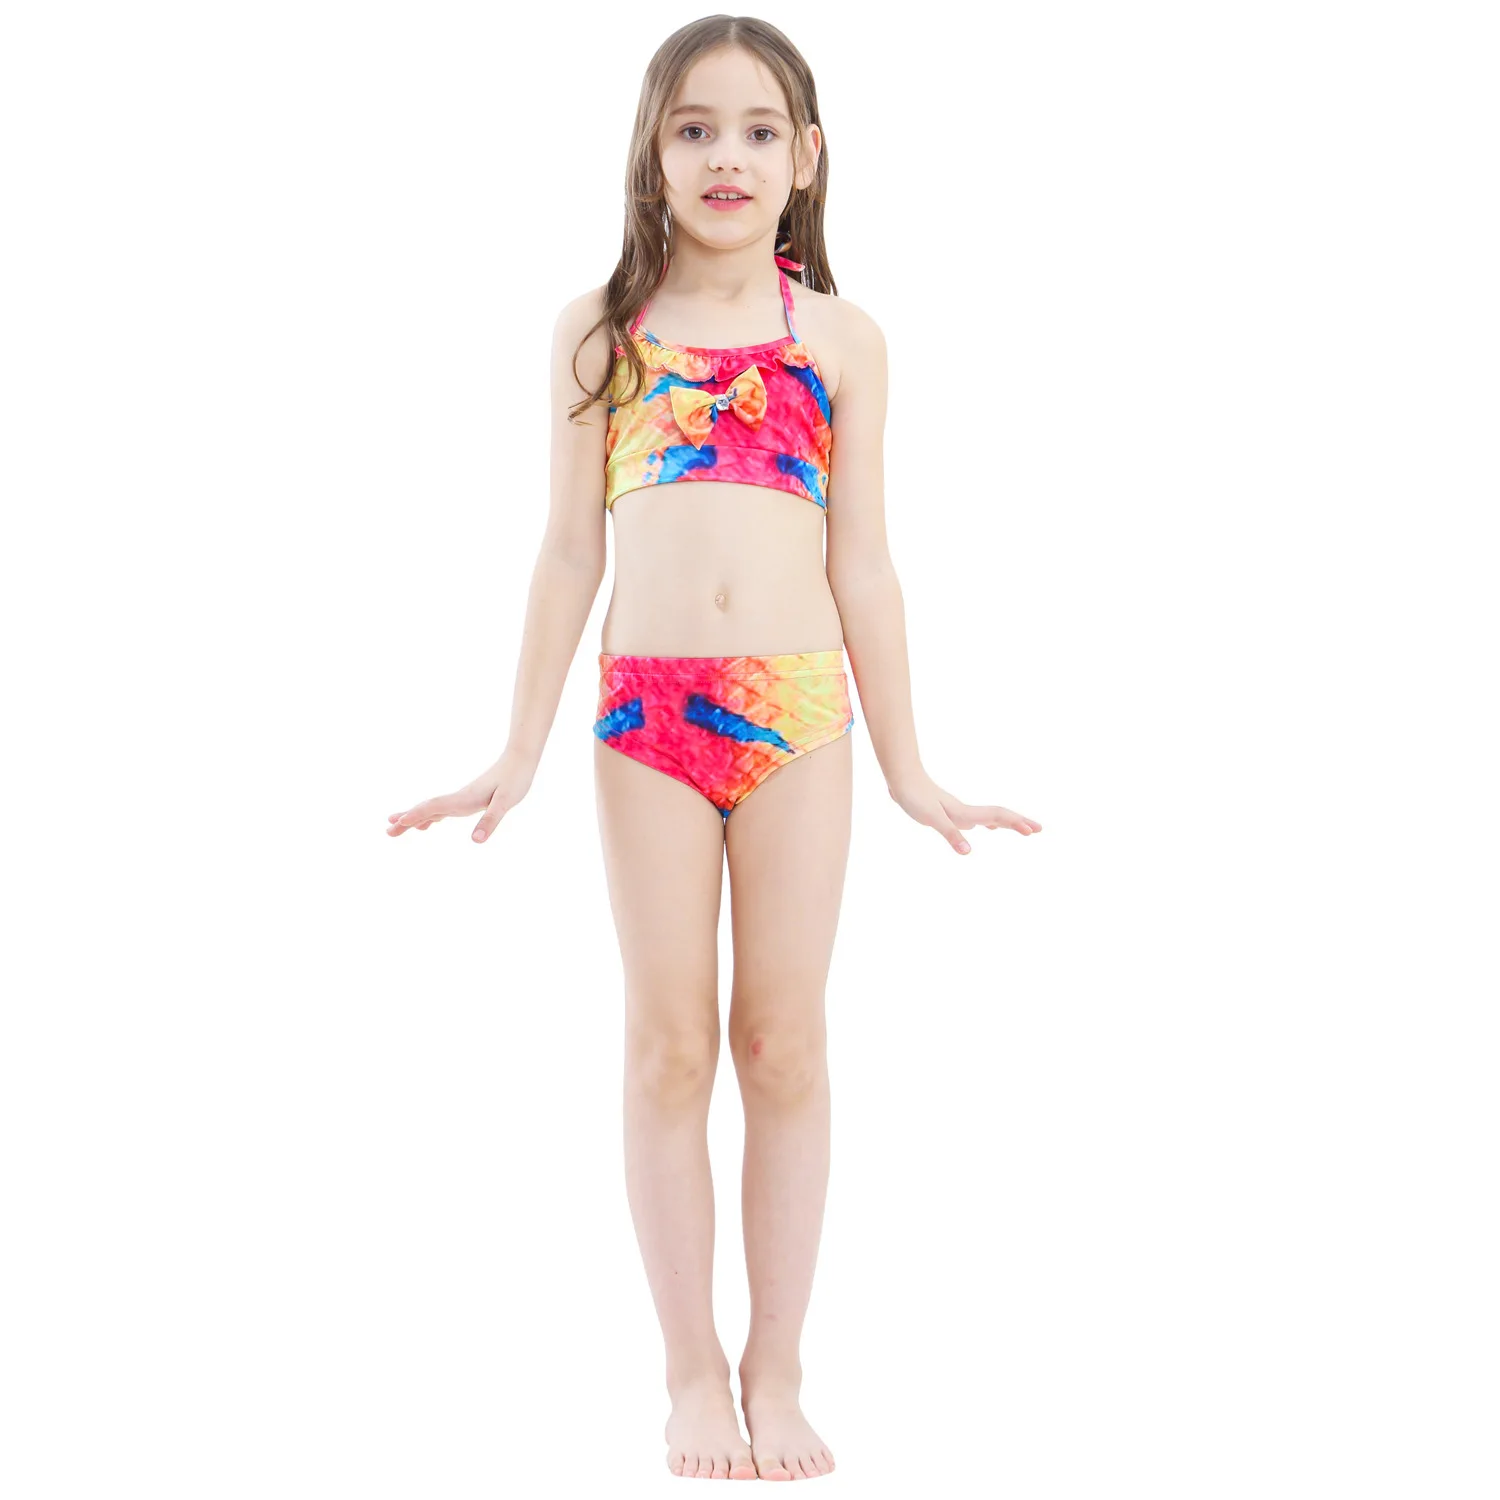 PrettyGirl/детский купальный костюм русалки для девочек с монофином; Флиппер; Костюм Русалки; Детский костюм для костюмированной вечеринки; сказочный пляжный бикини